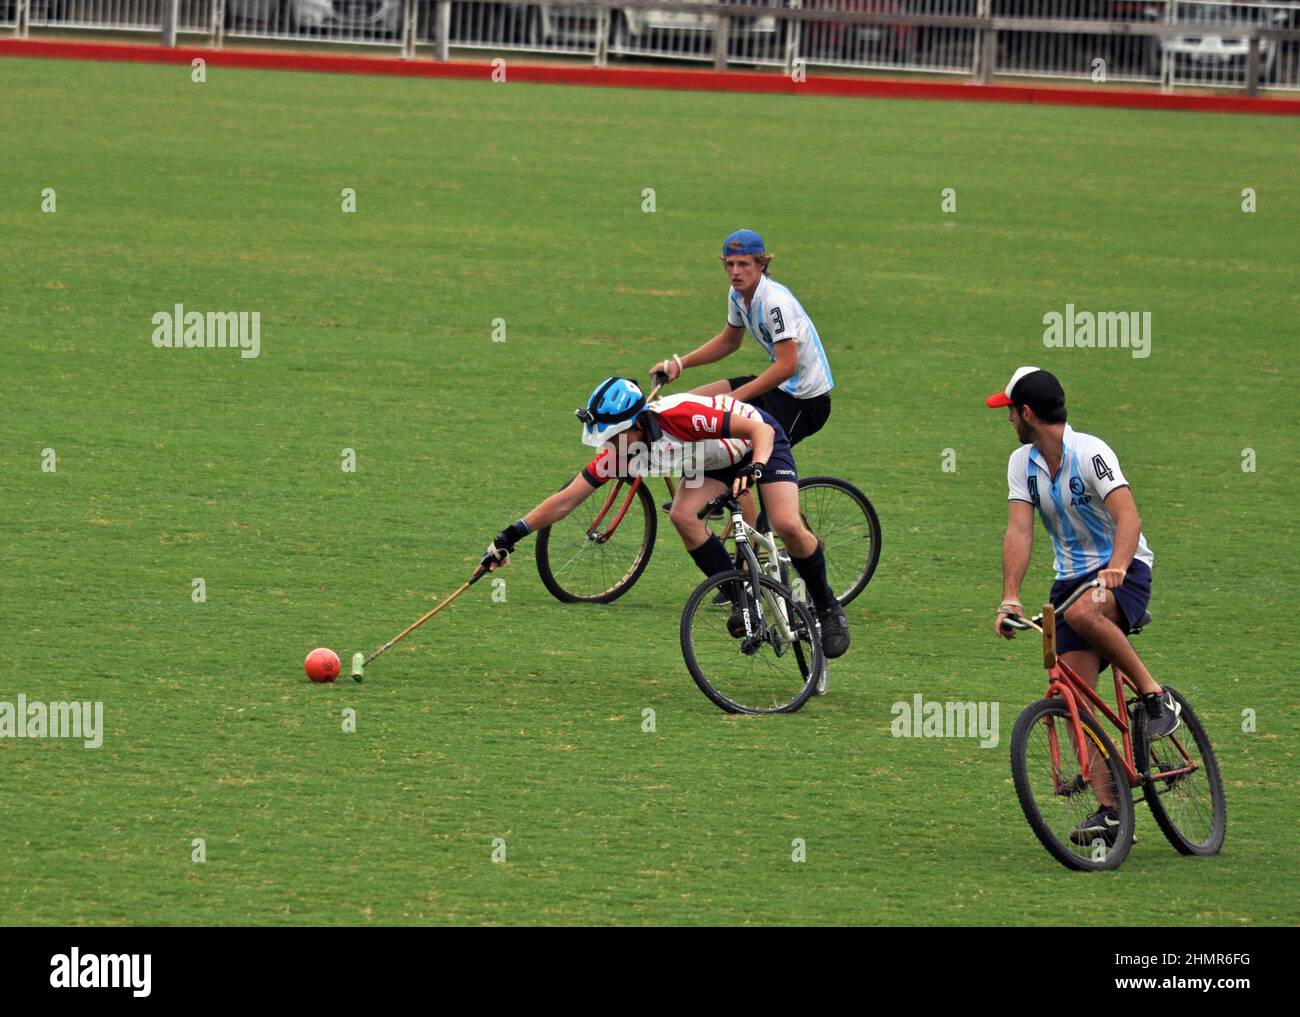 Vélo Polo sur herbe aux Championnats du monde, Buenos Aires, Argentine décembre 2019 Banque D'Images